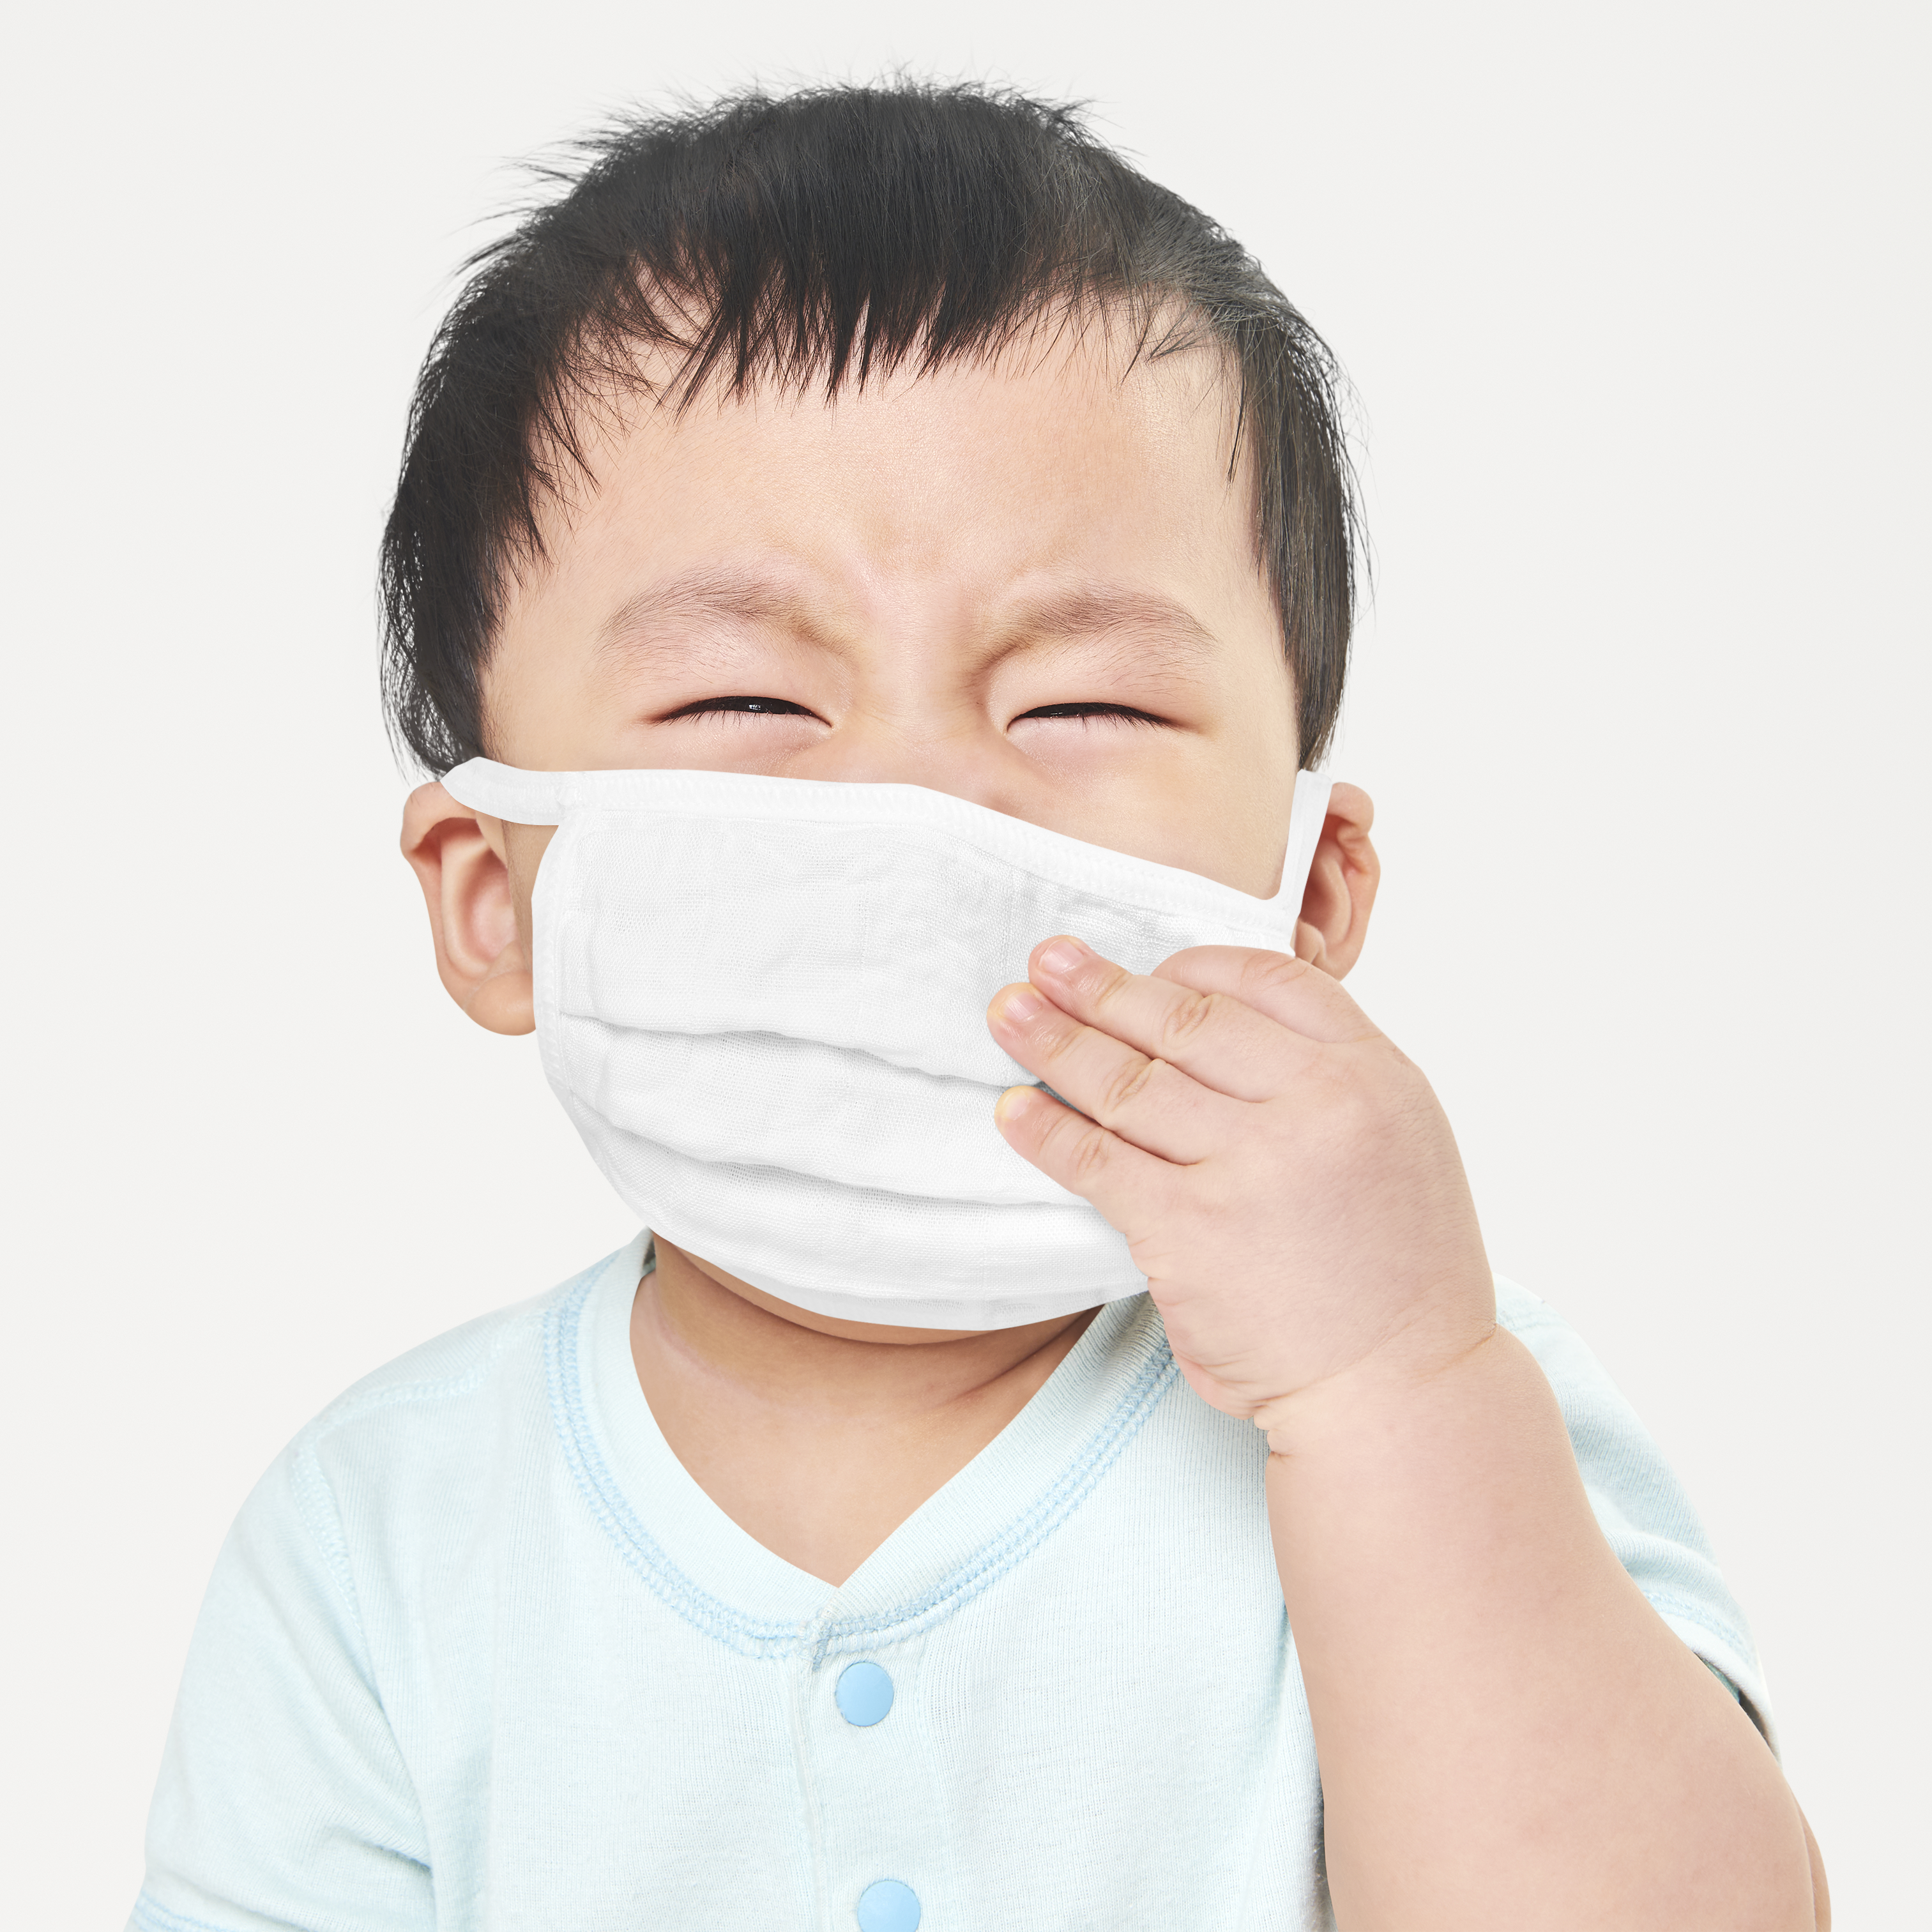 ภัยร้ายโรคติดเชื้อเฉียบพลันระบบหายใจในเด็ก แนะผู้ปกครองดูแลใกล้ชิด